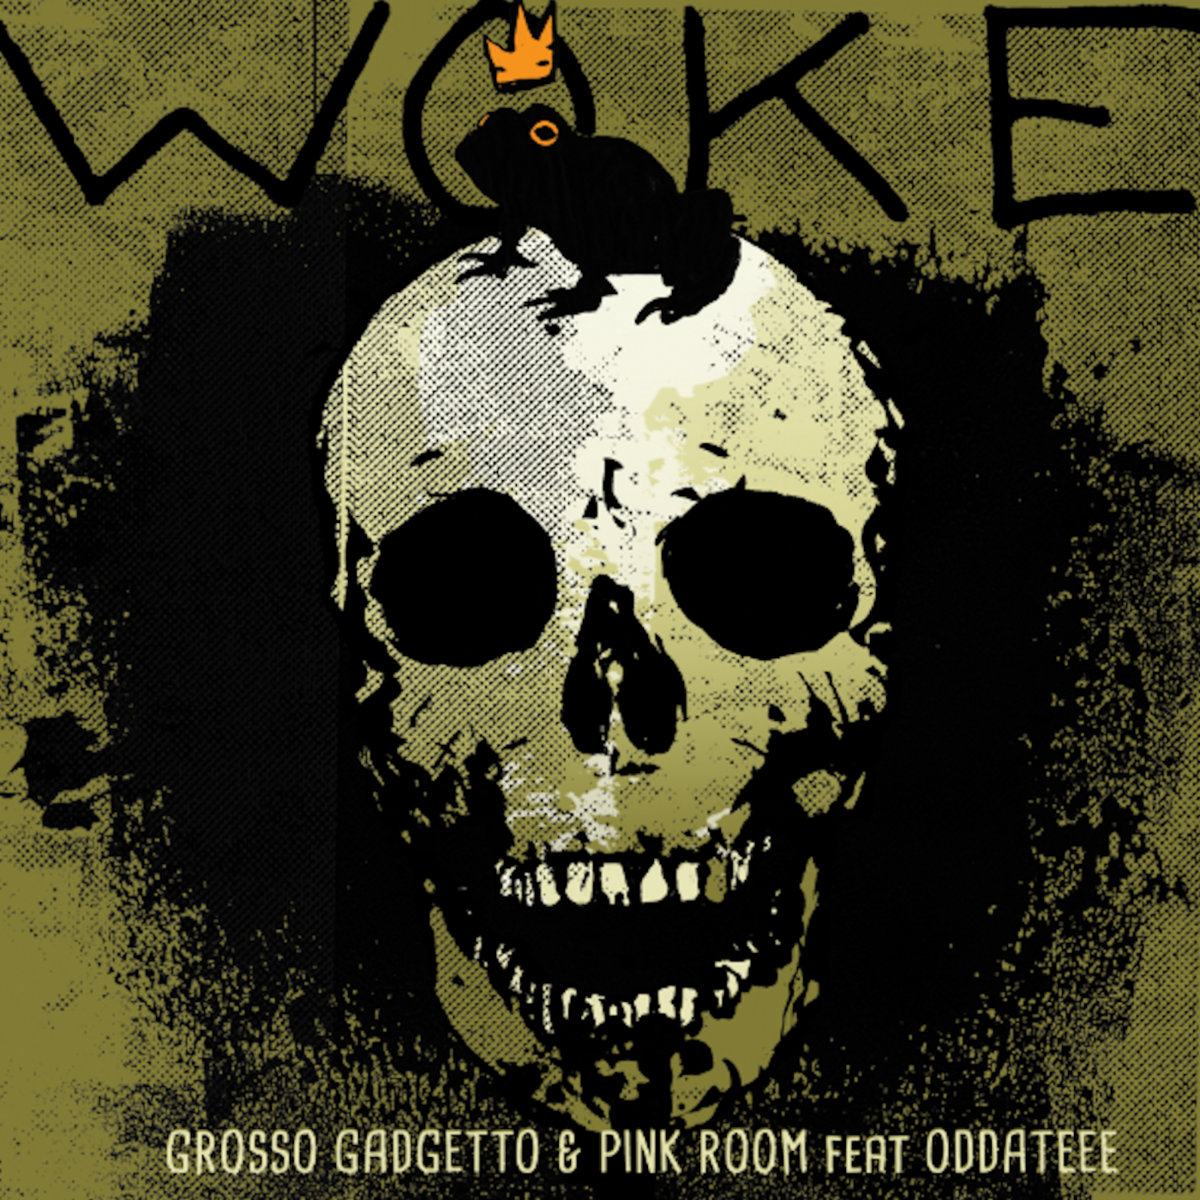 " Woke " by Grosso Gadgetto & Pink Room feat Oddateee